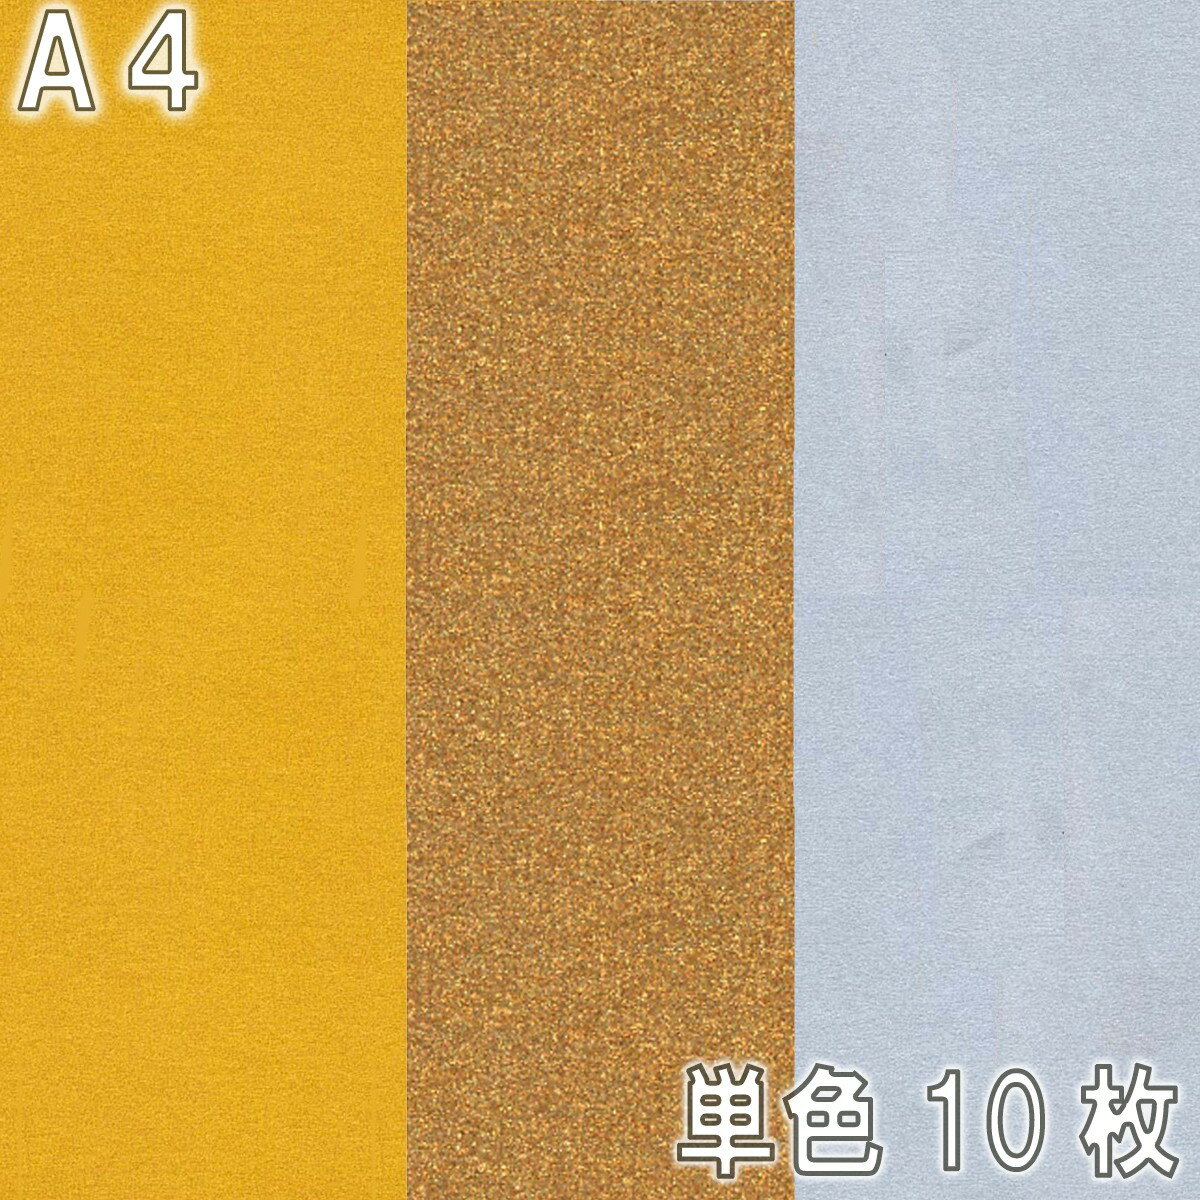 [ メール便可 ] ニューカラーR 特別色 A4 金 銀 銅 10枚組 造形紙 両面 色画用紙 ゴークラ